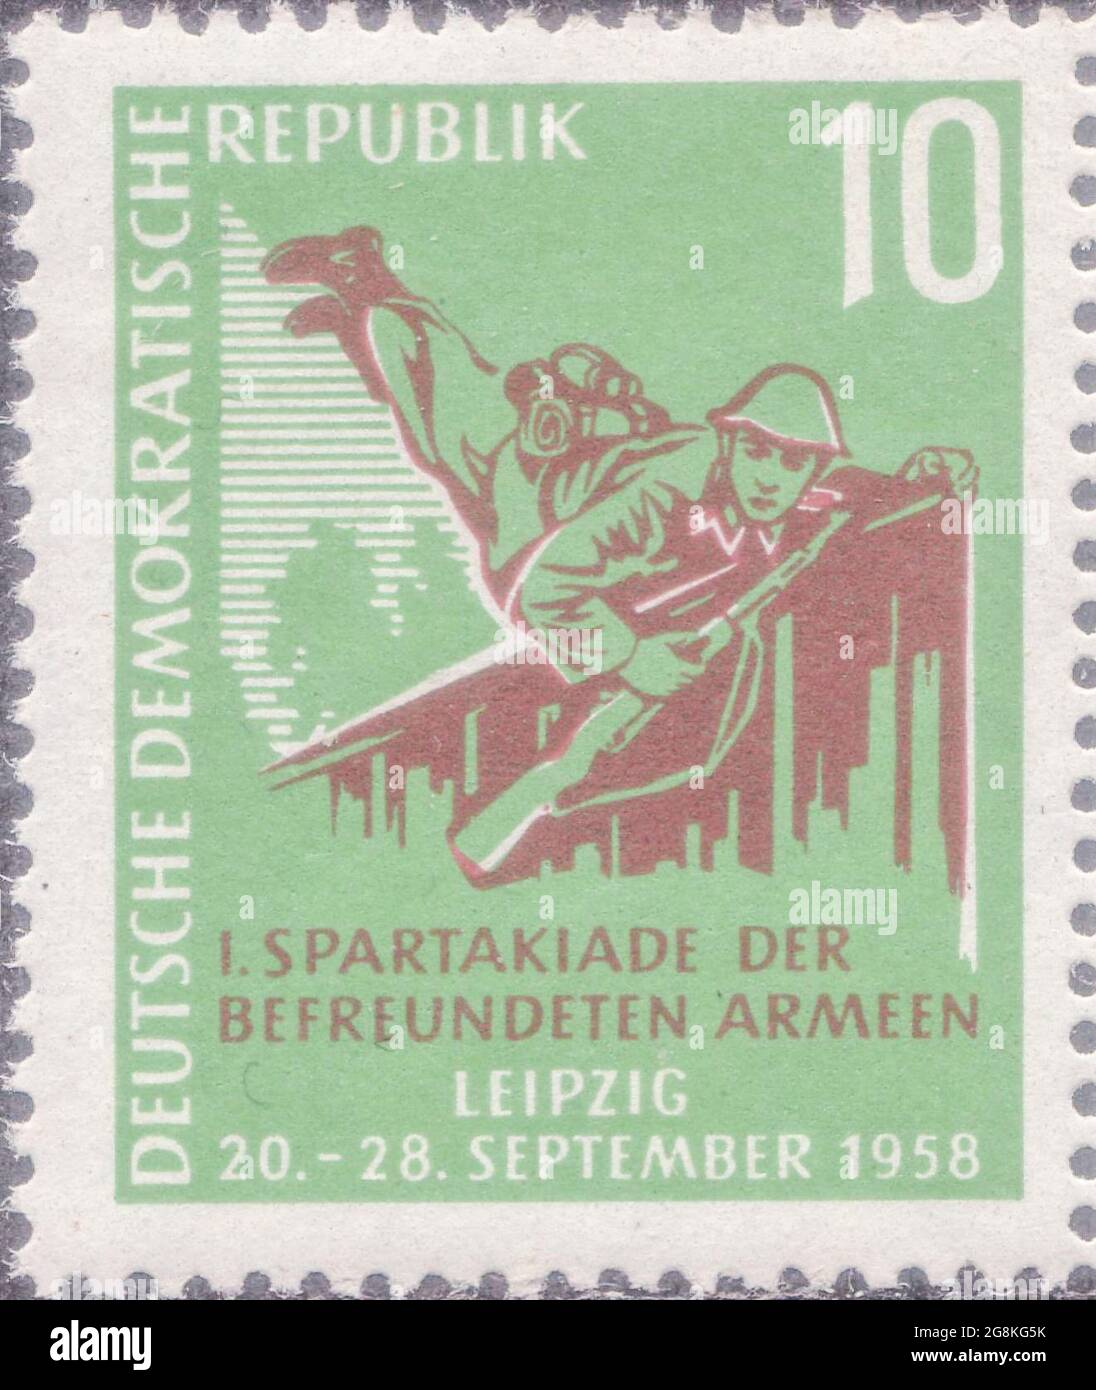 DDR [Deutsche Demokratische Republik (German Democratic Republic), official name of the former East Germany] Stock Photo